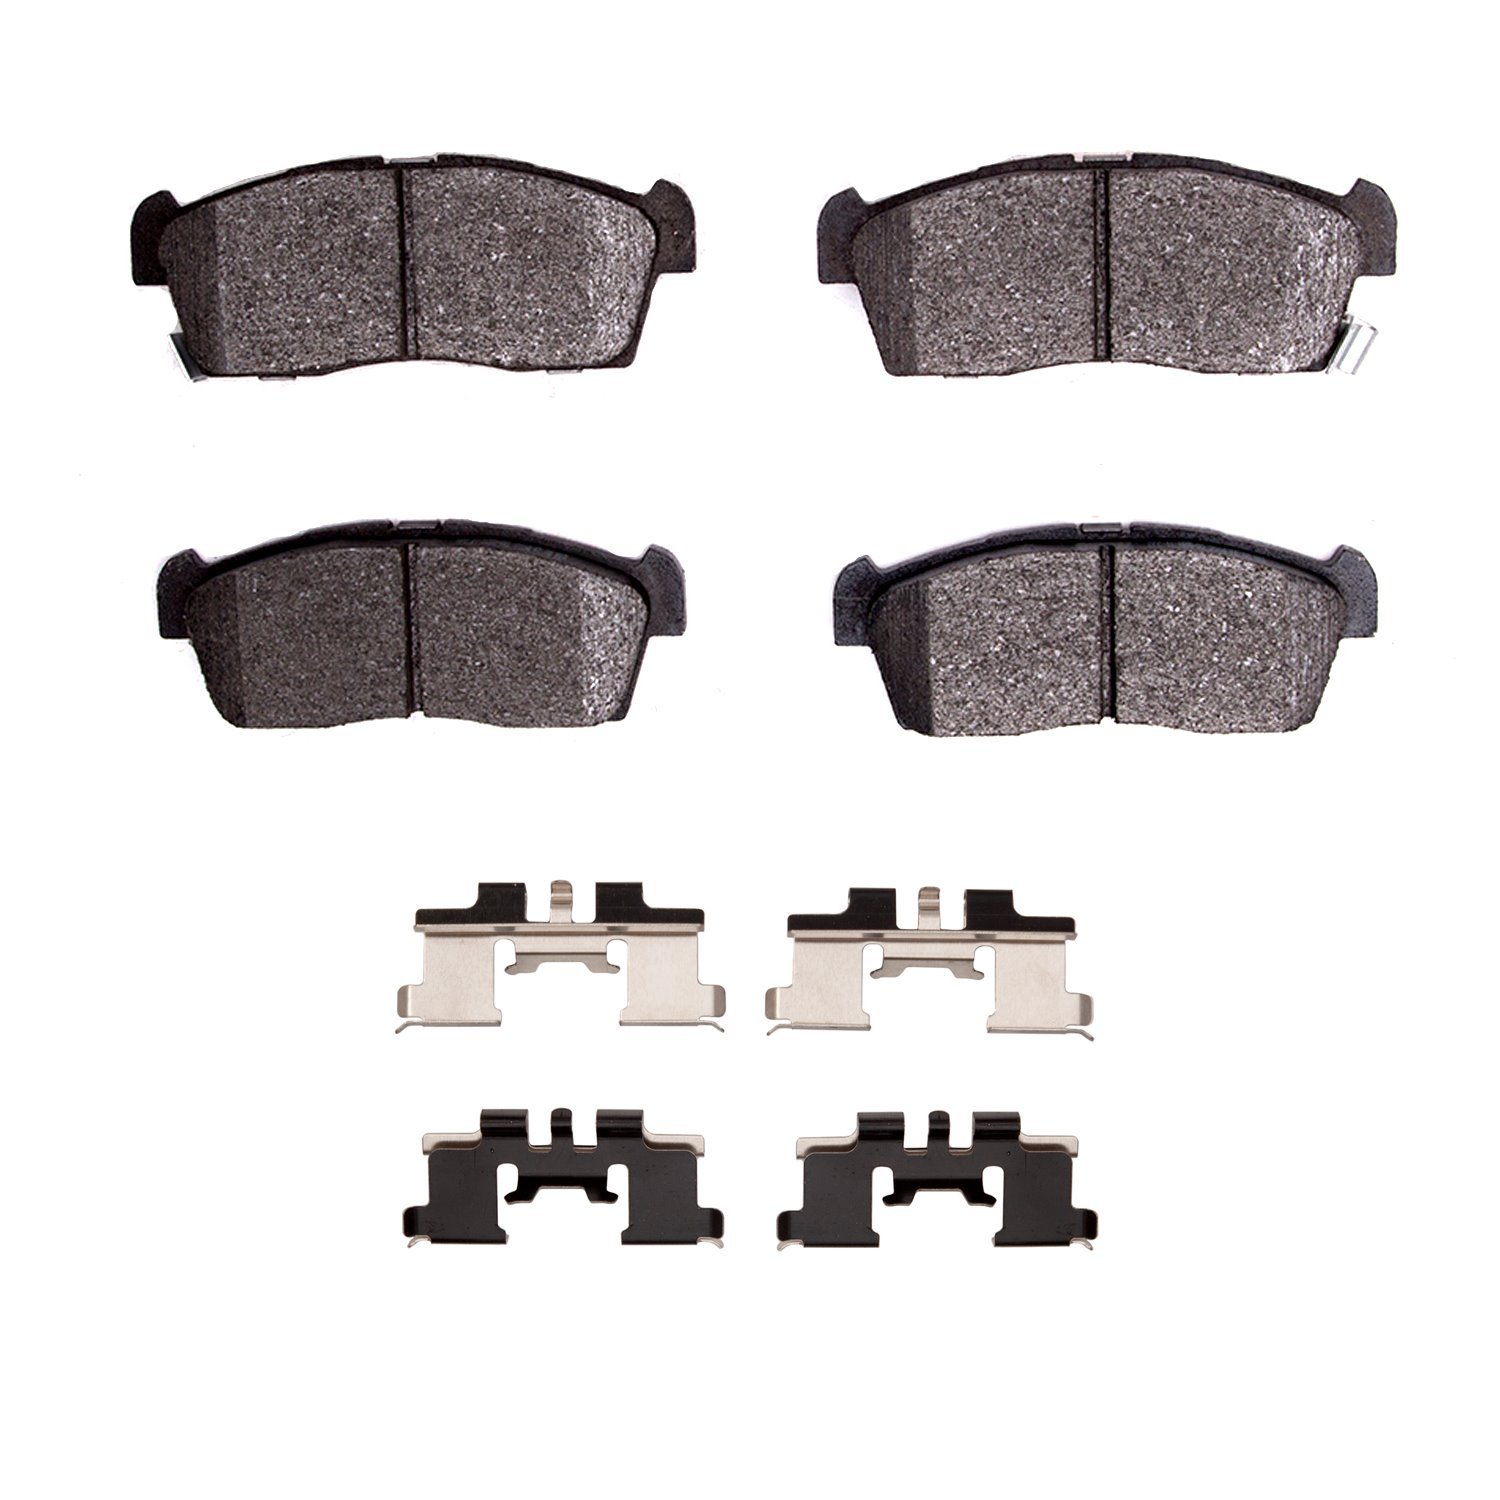 Optimum OE Brake Pads & Hardware Kit, 2012-2017 Mitsubishi, Position: Front